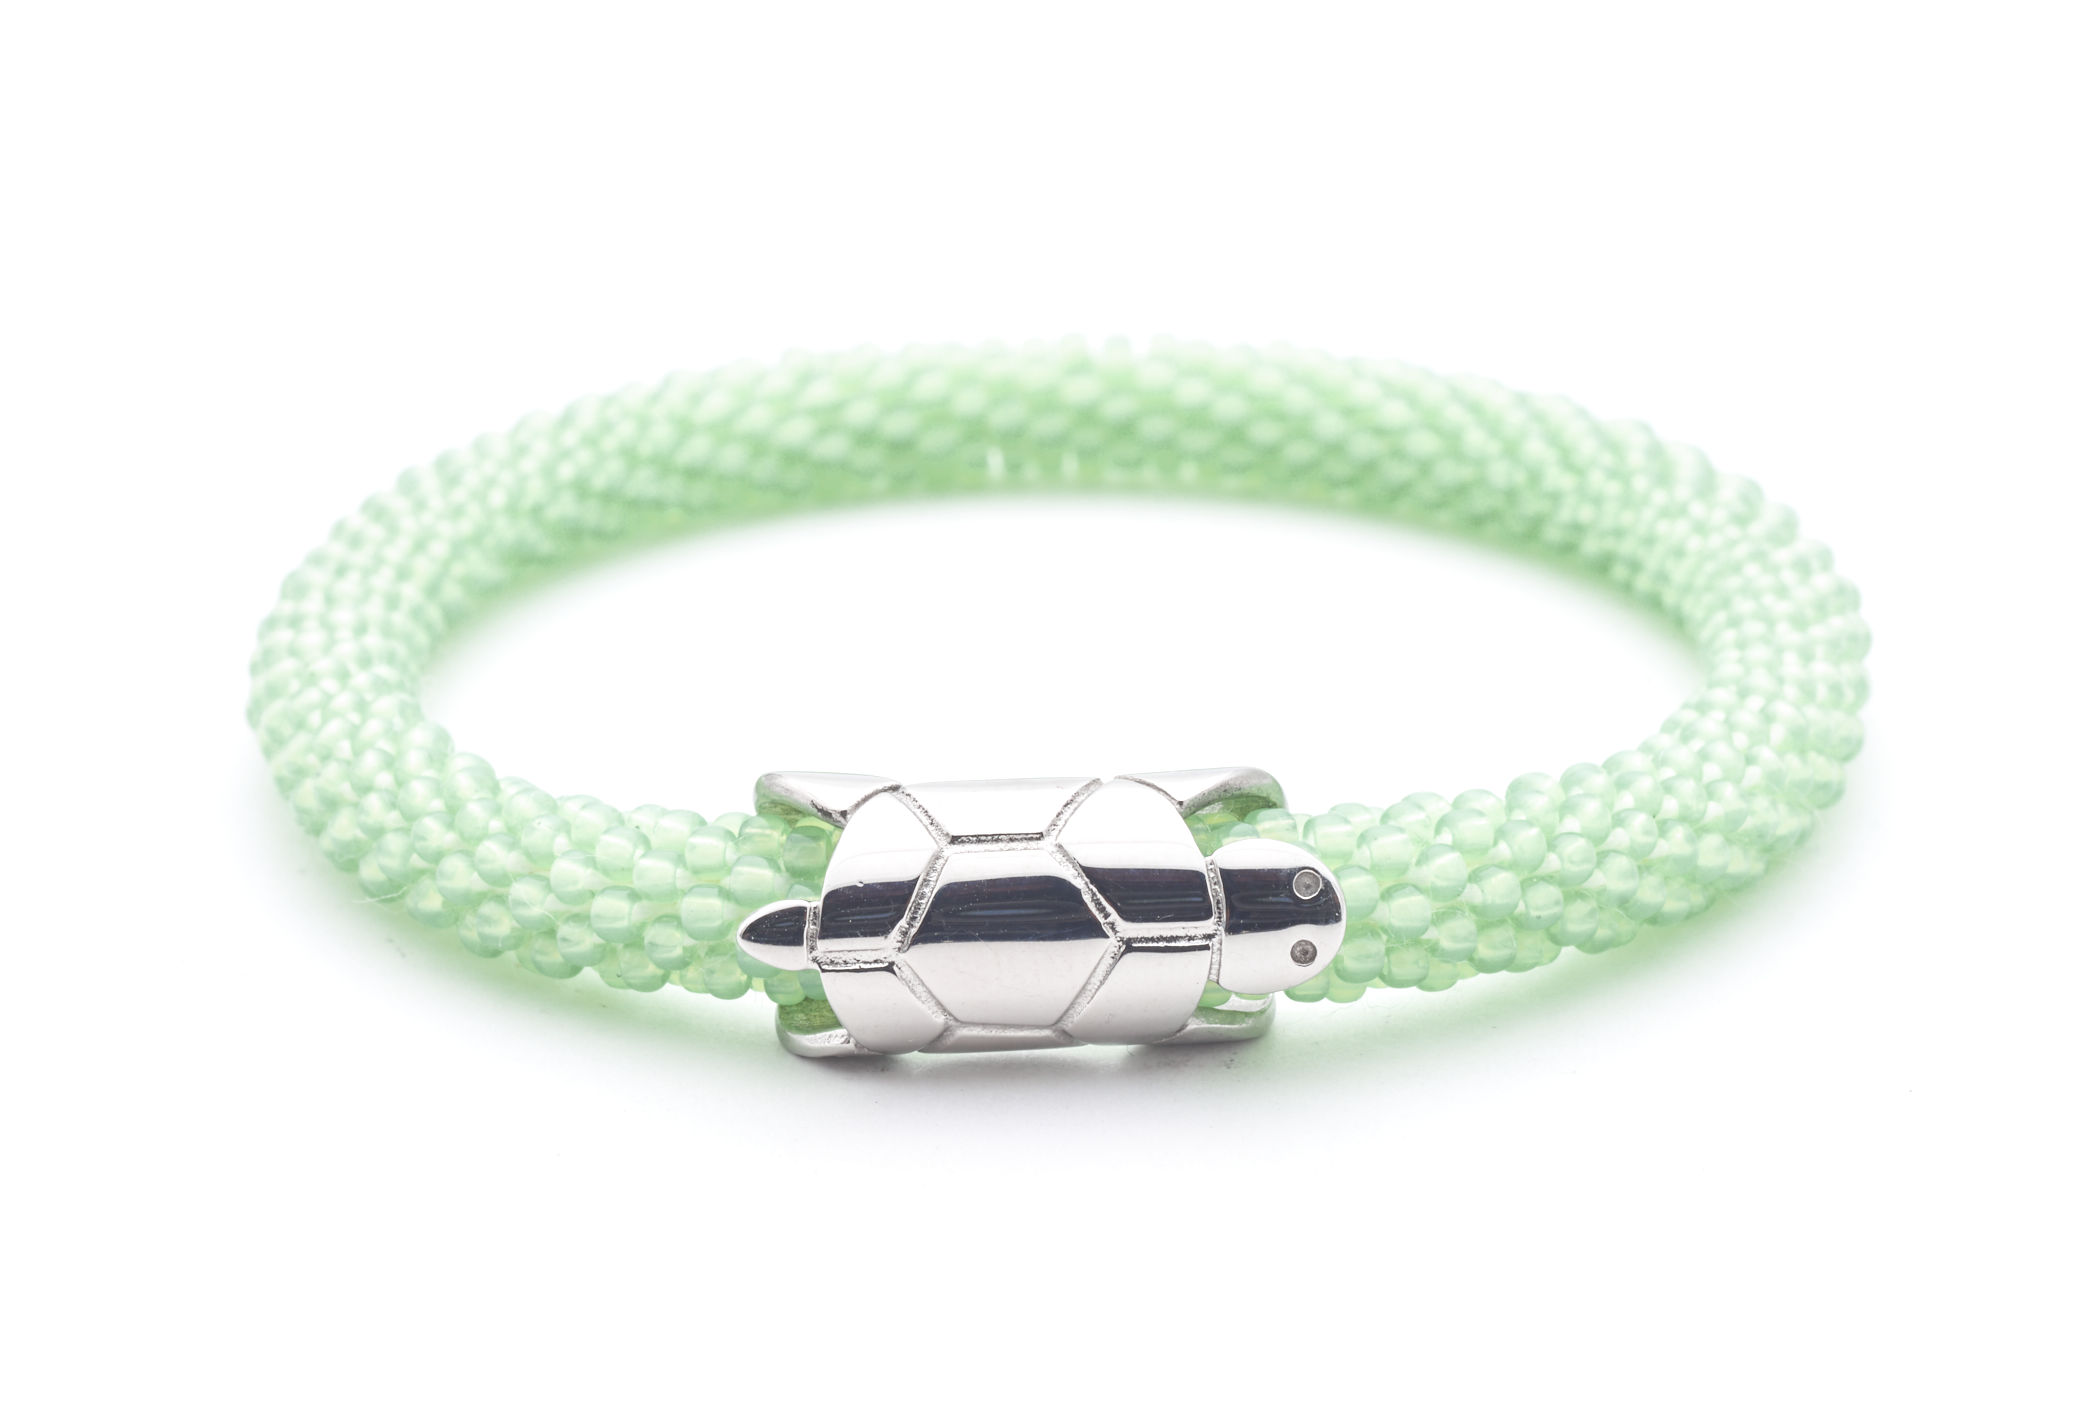 Sashka Co. Charm Bracelet Light Green Sea Turtle Charm Bracelet - Extended 8"